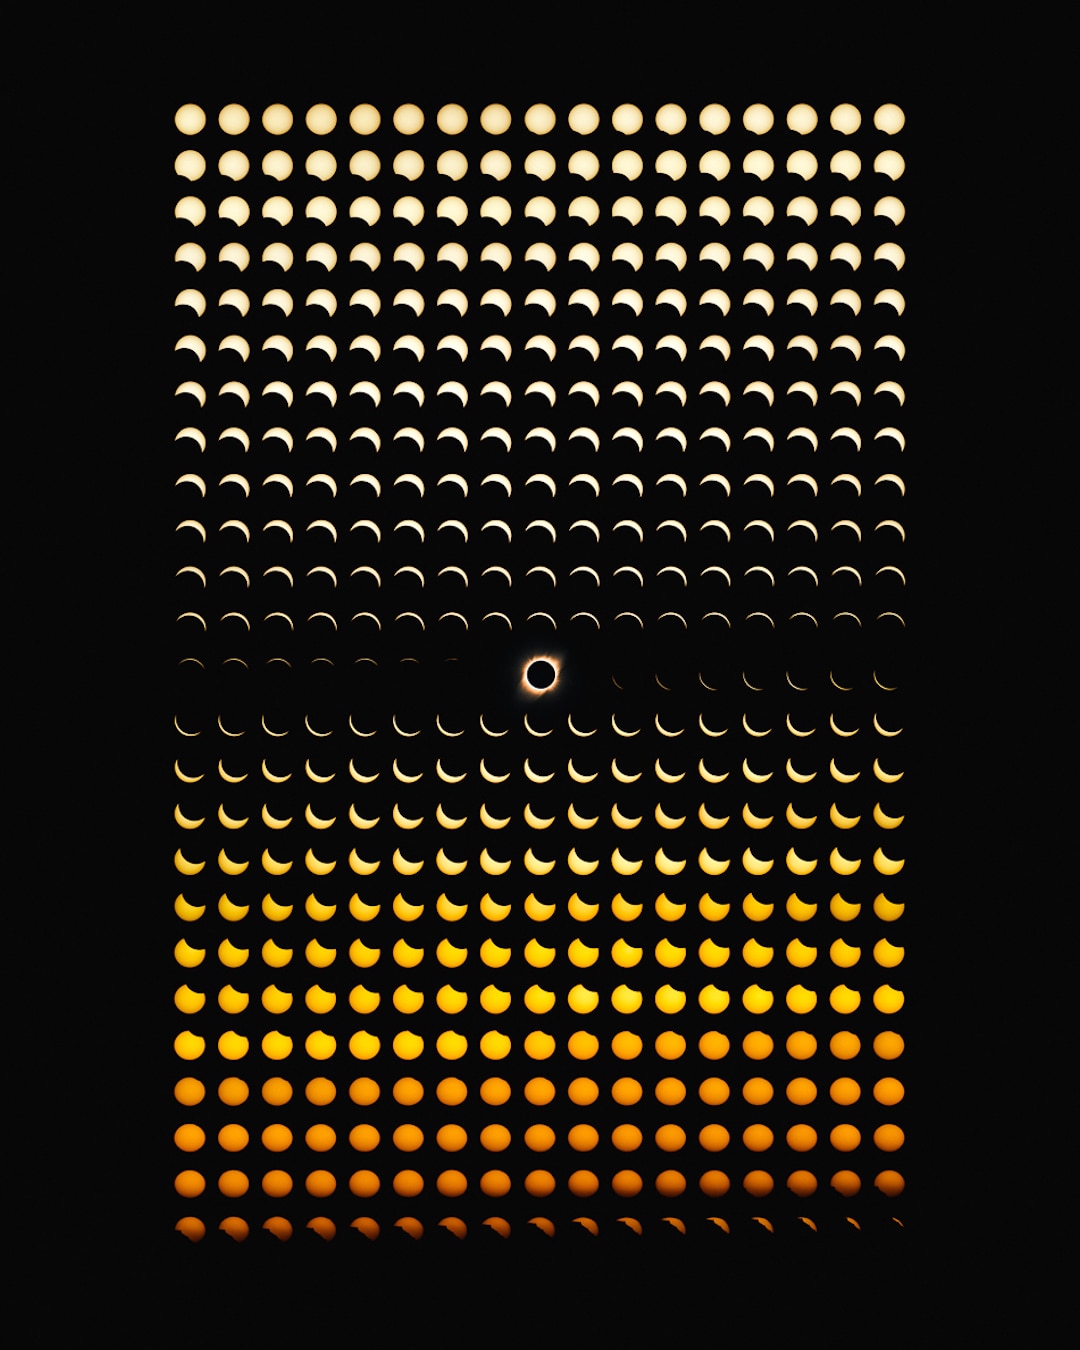 eclipse solar de chile por Dan Marker-Moore